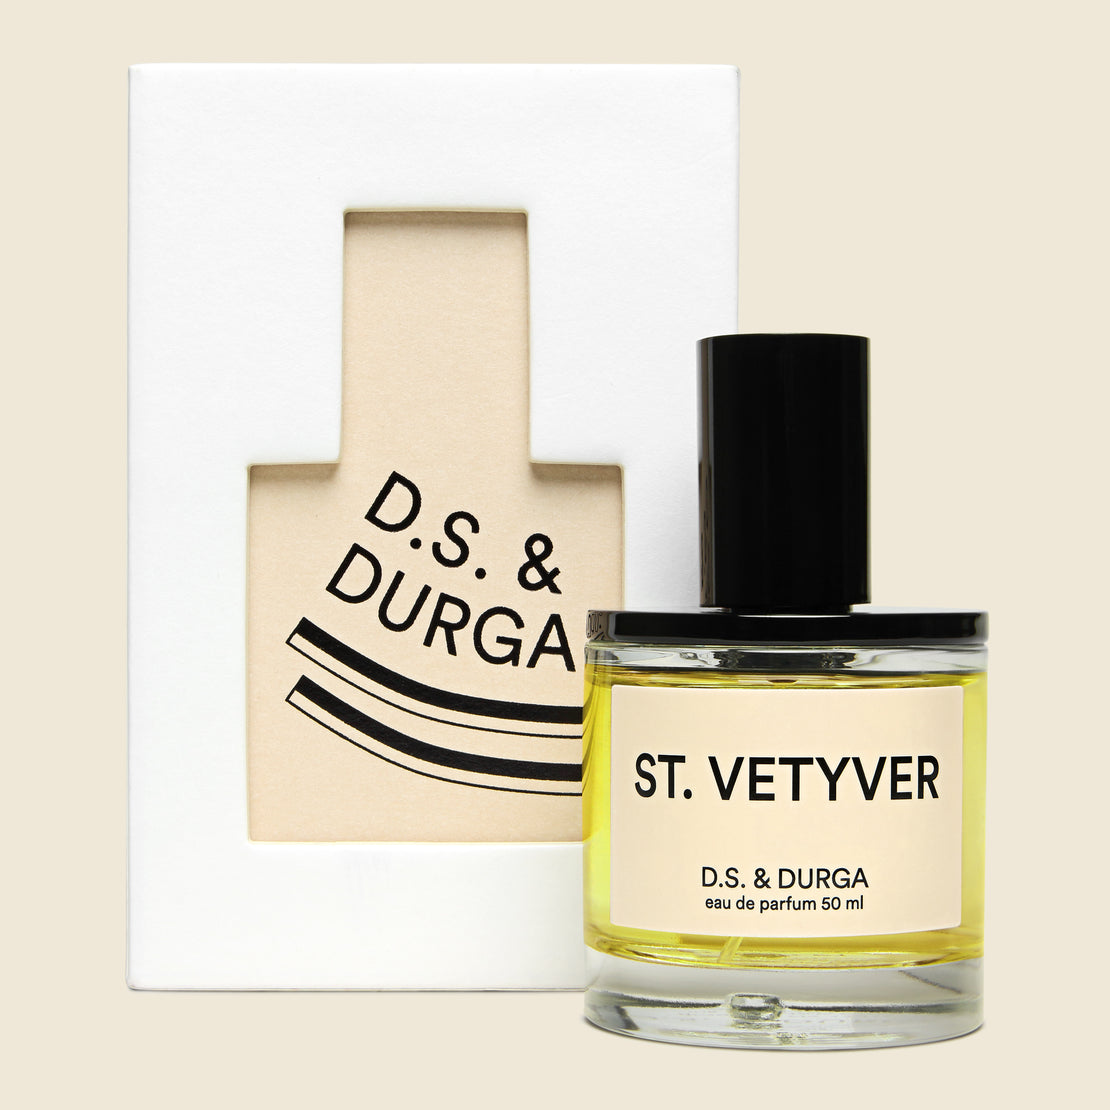 D.S. & Durga St. Vetyver Eau de Parfum